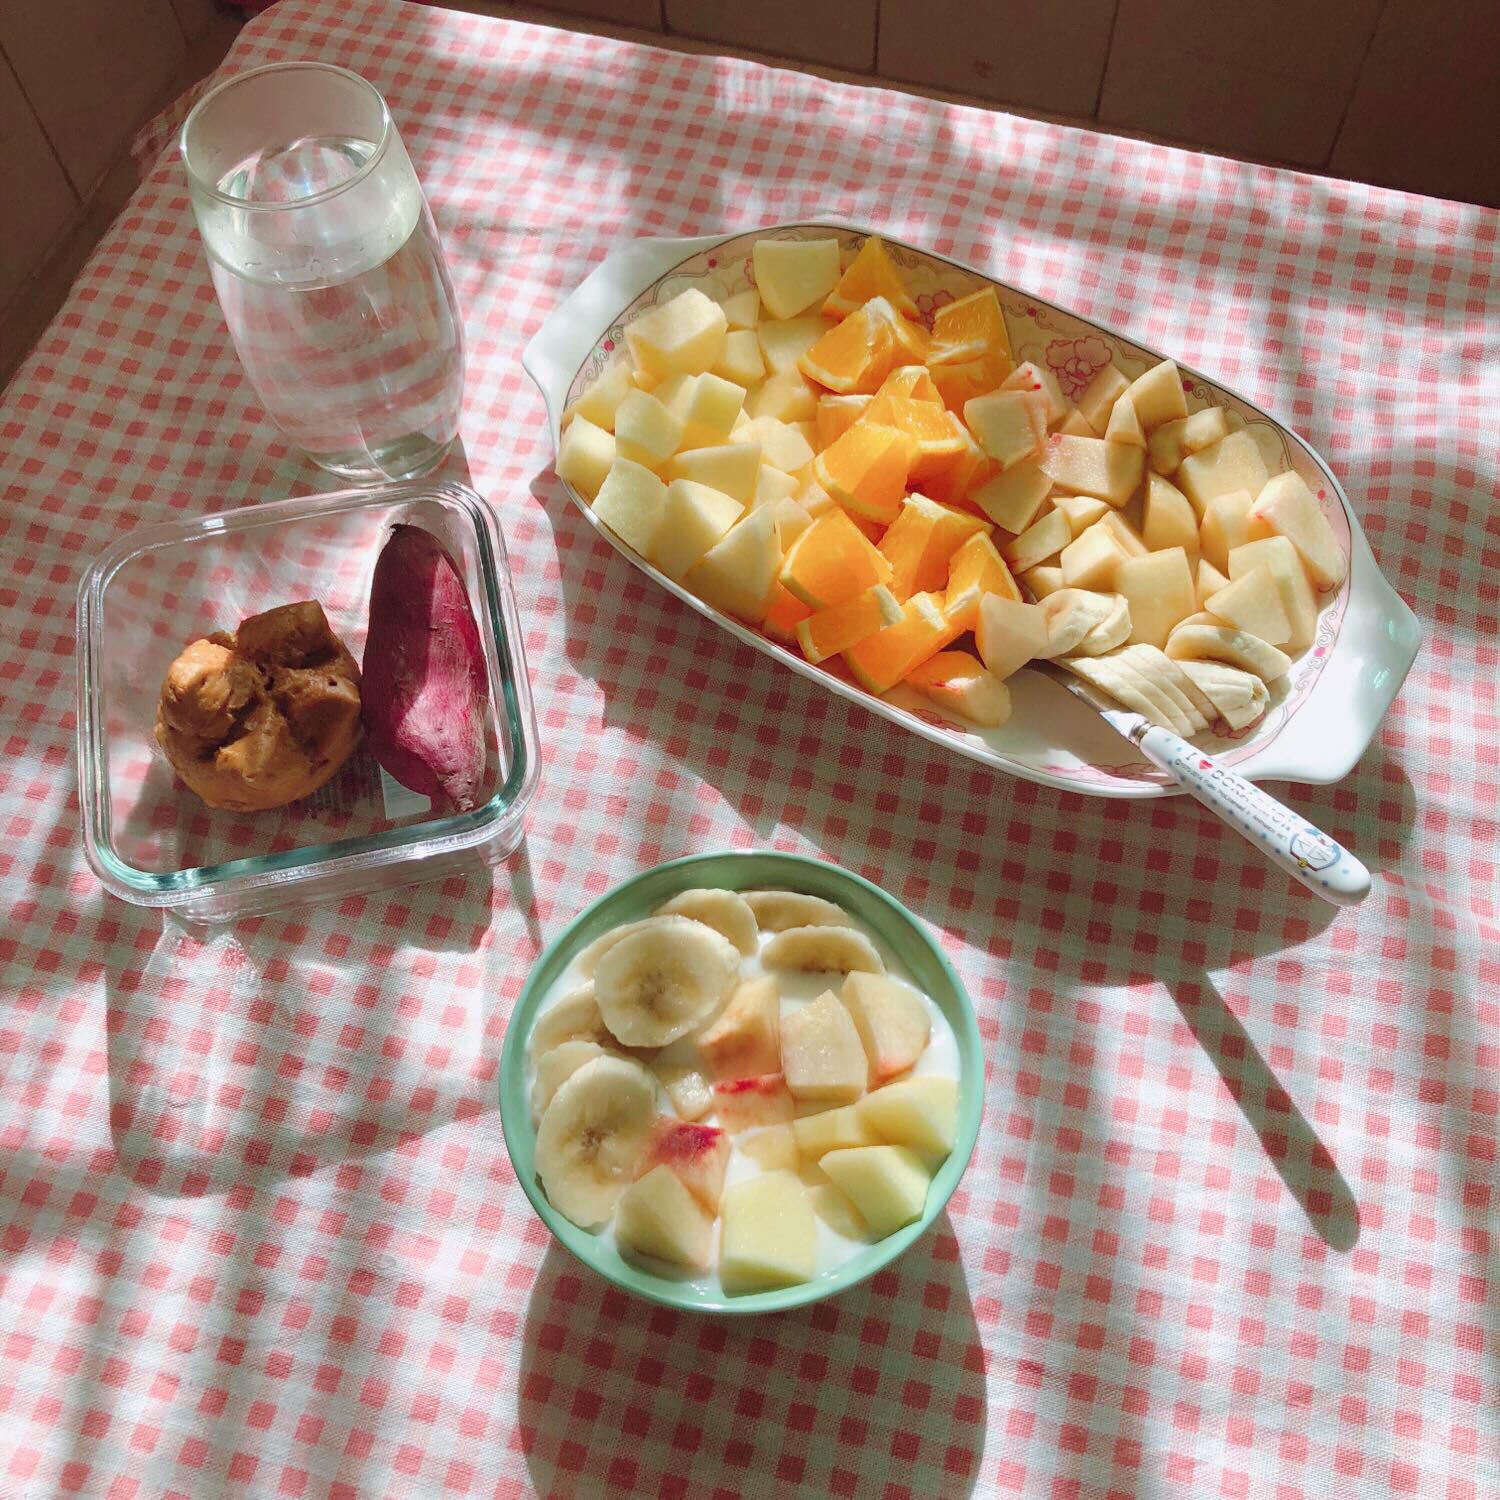 一顿奢侈的早餐🙃,每天最幸福的时刻,大概是简单的幸福,分享一顿早餐